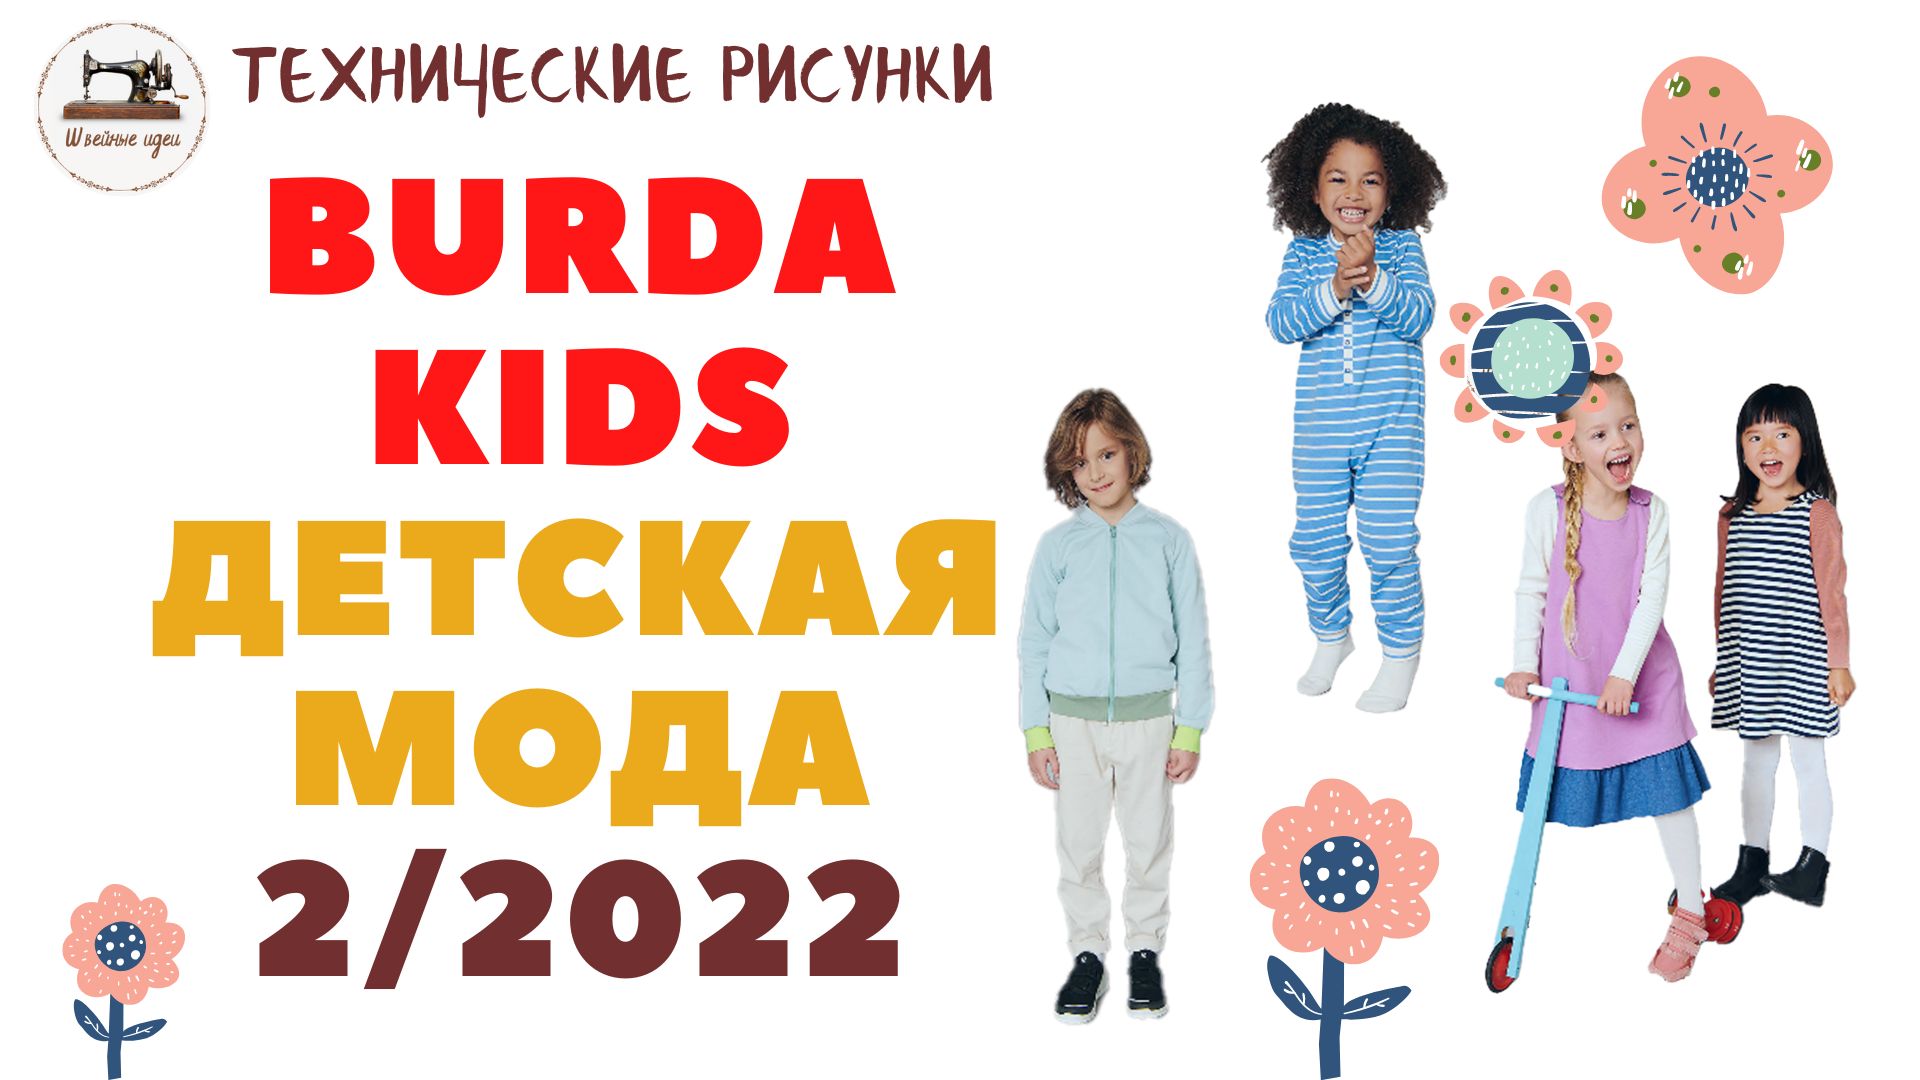 Burda Kids 2 2022. Детская мода. ТЕХНИЧЕСКИЕ РИСУНКИ